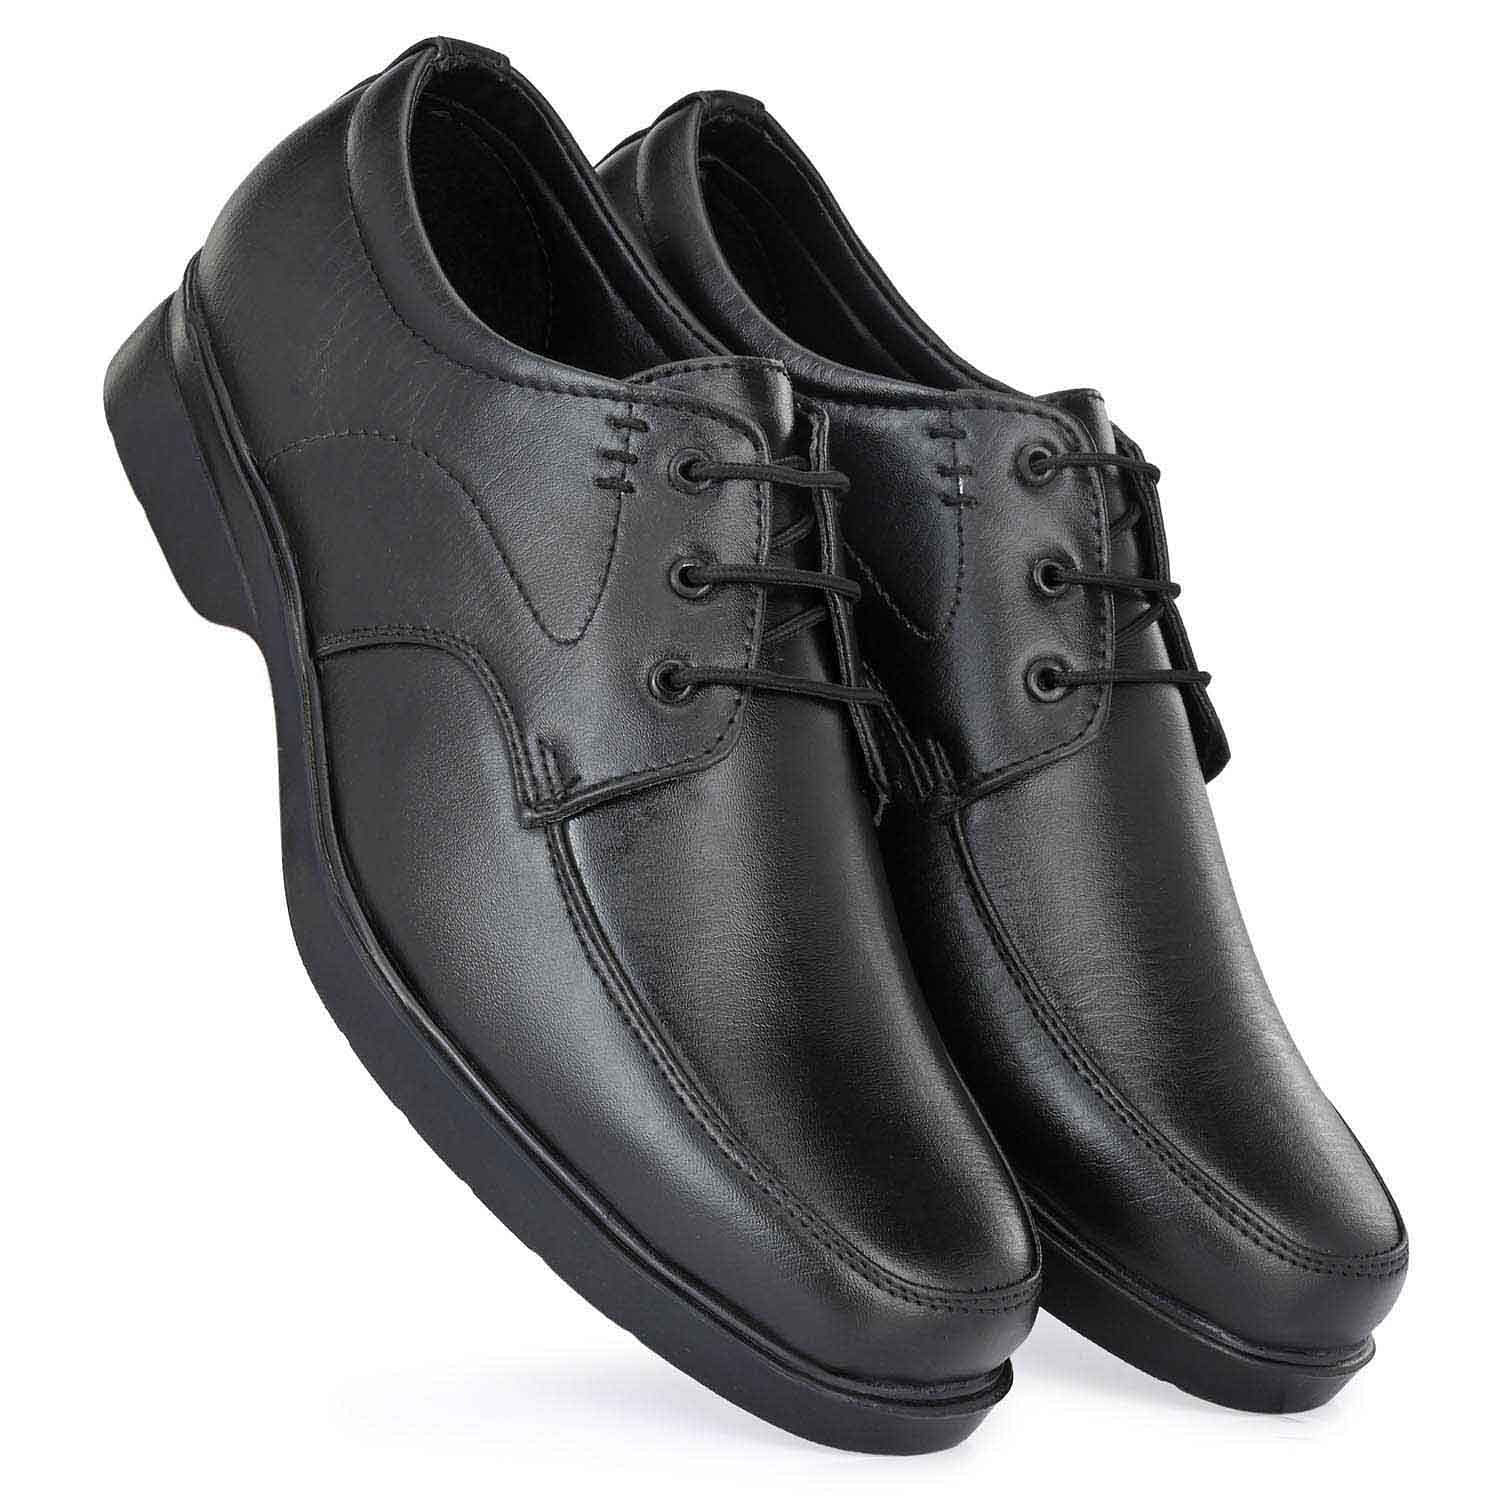 Pair-it Men moccasin Formal Shoes - MN-RYDER223 - Black